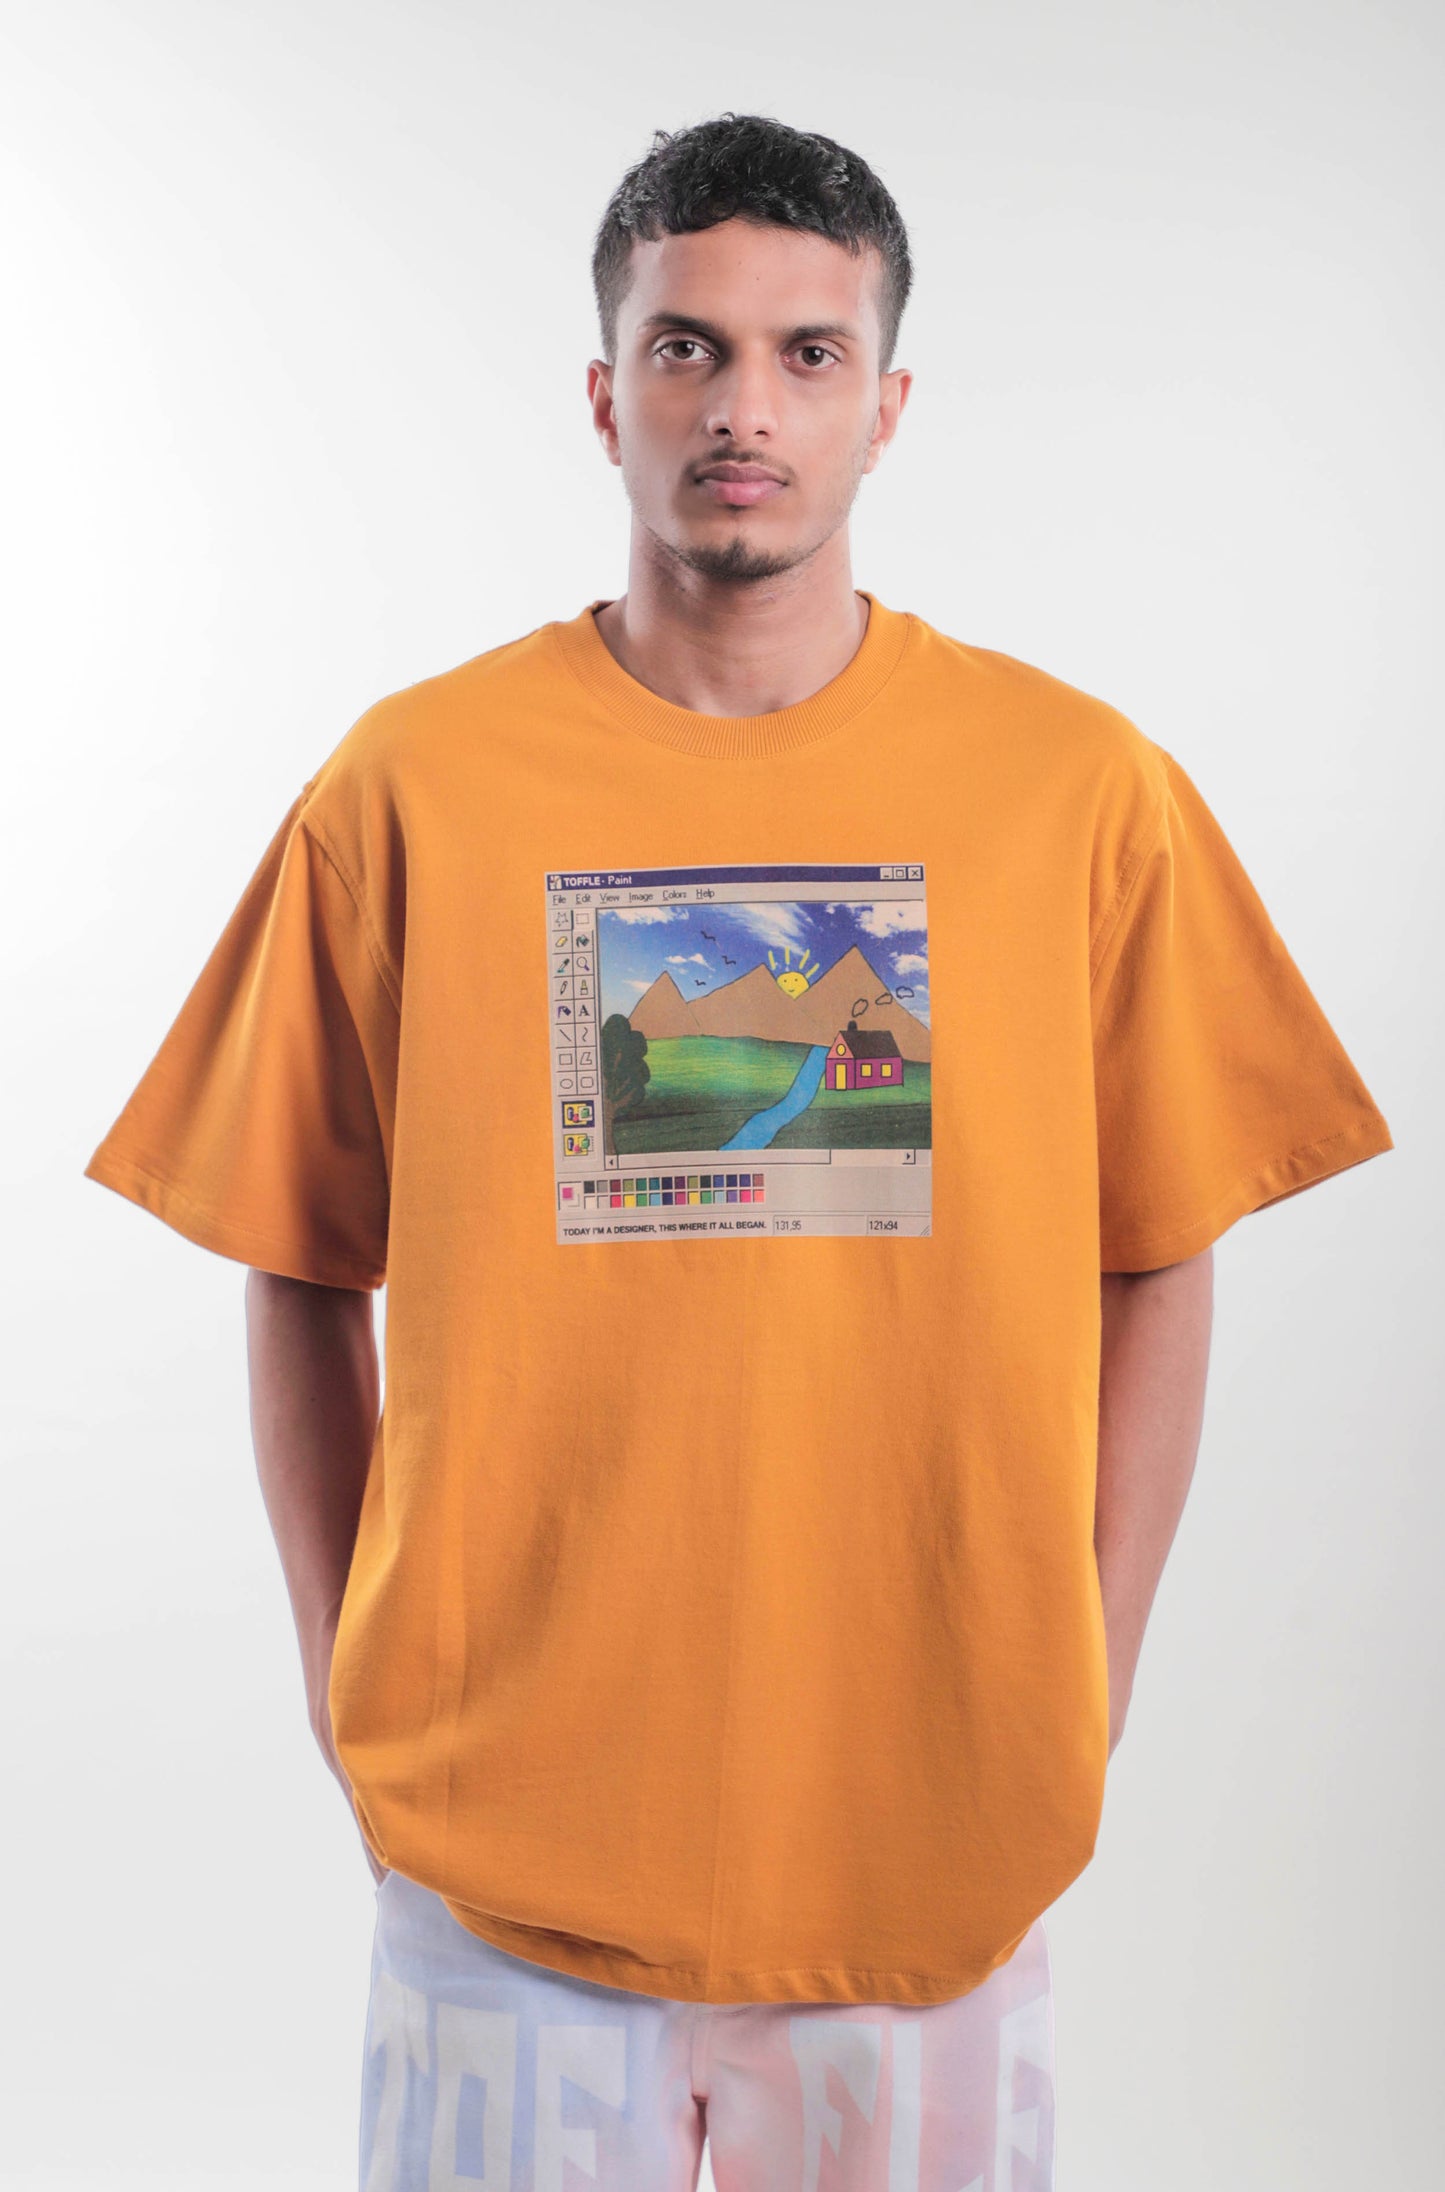 Windows BG T-shirt